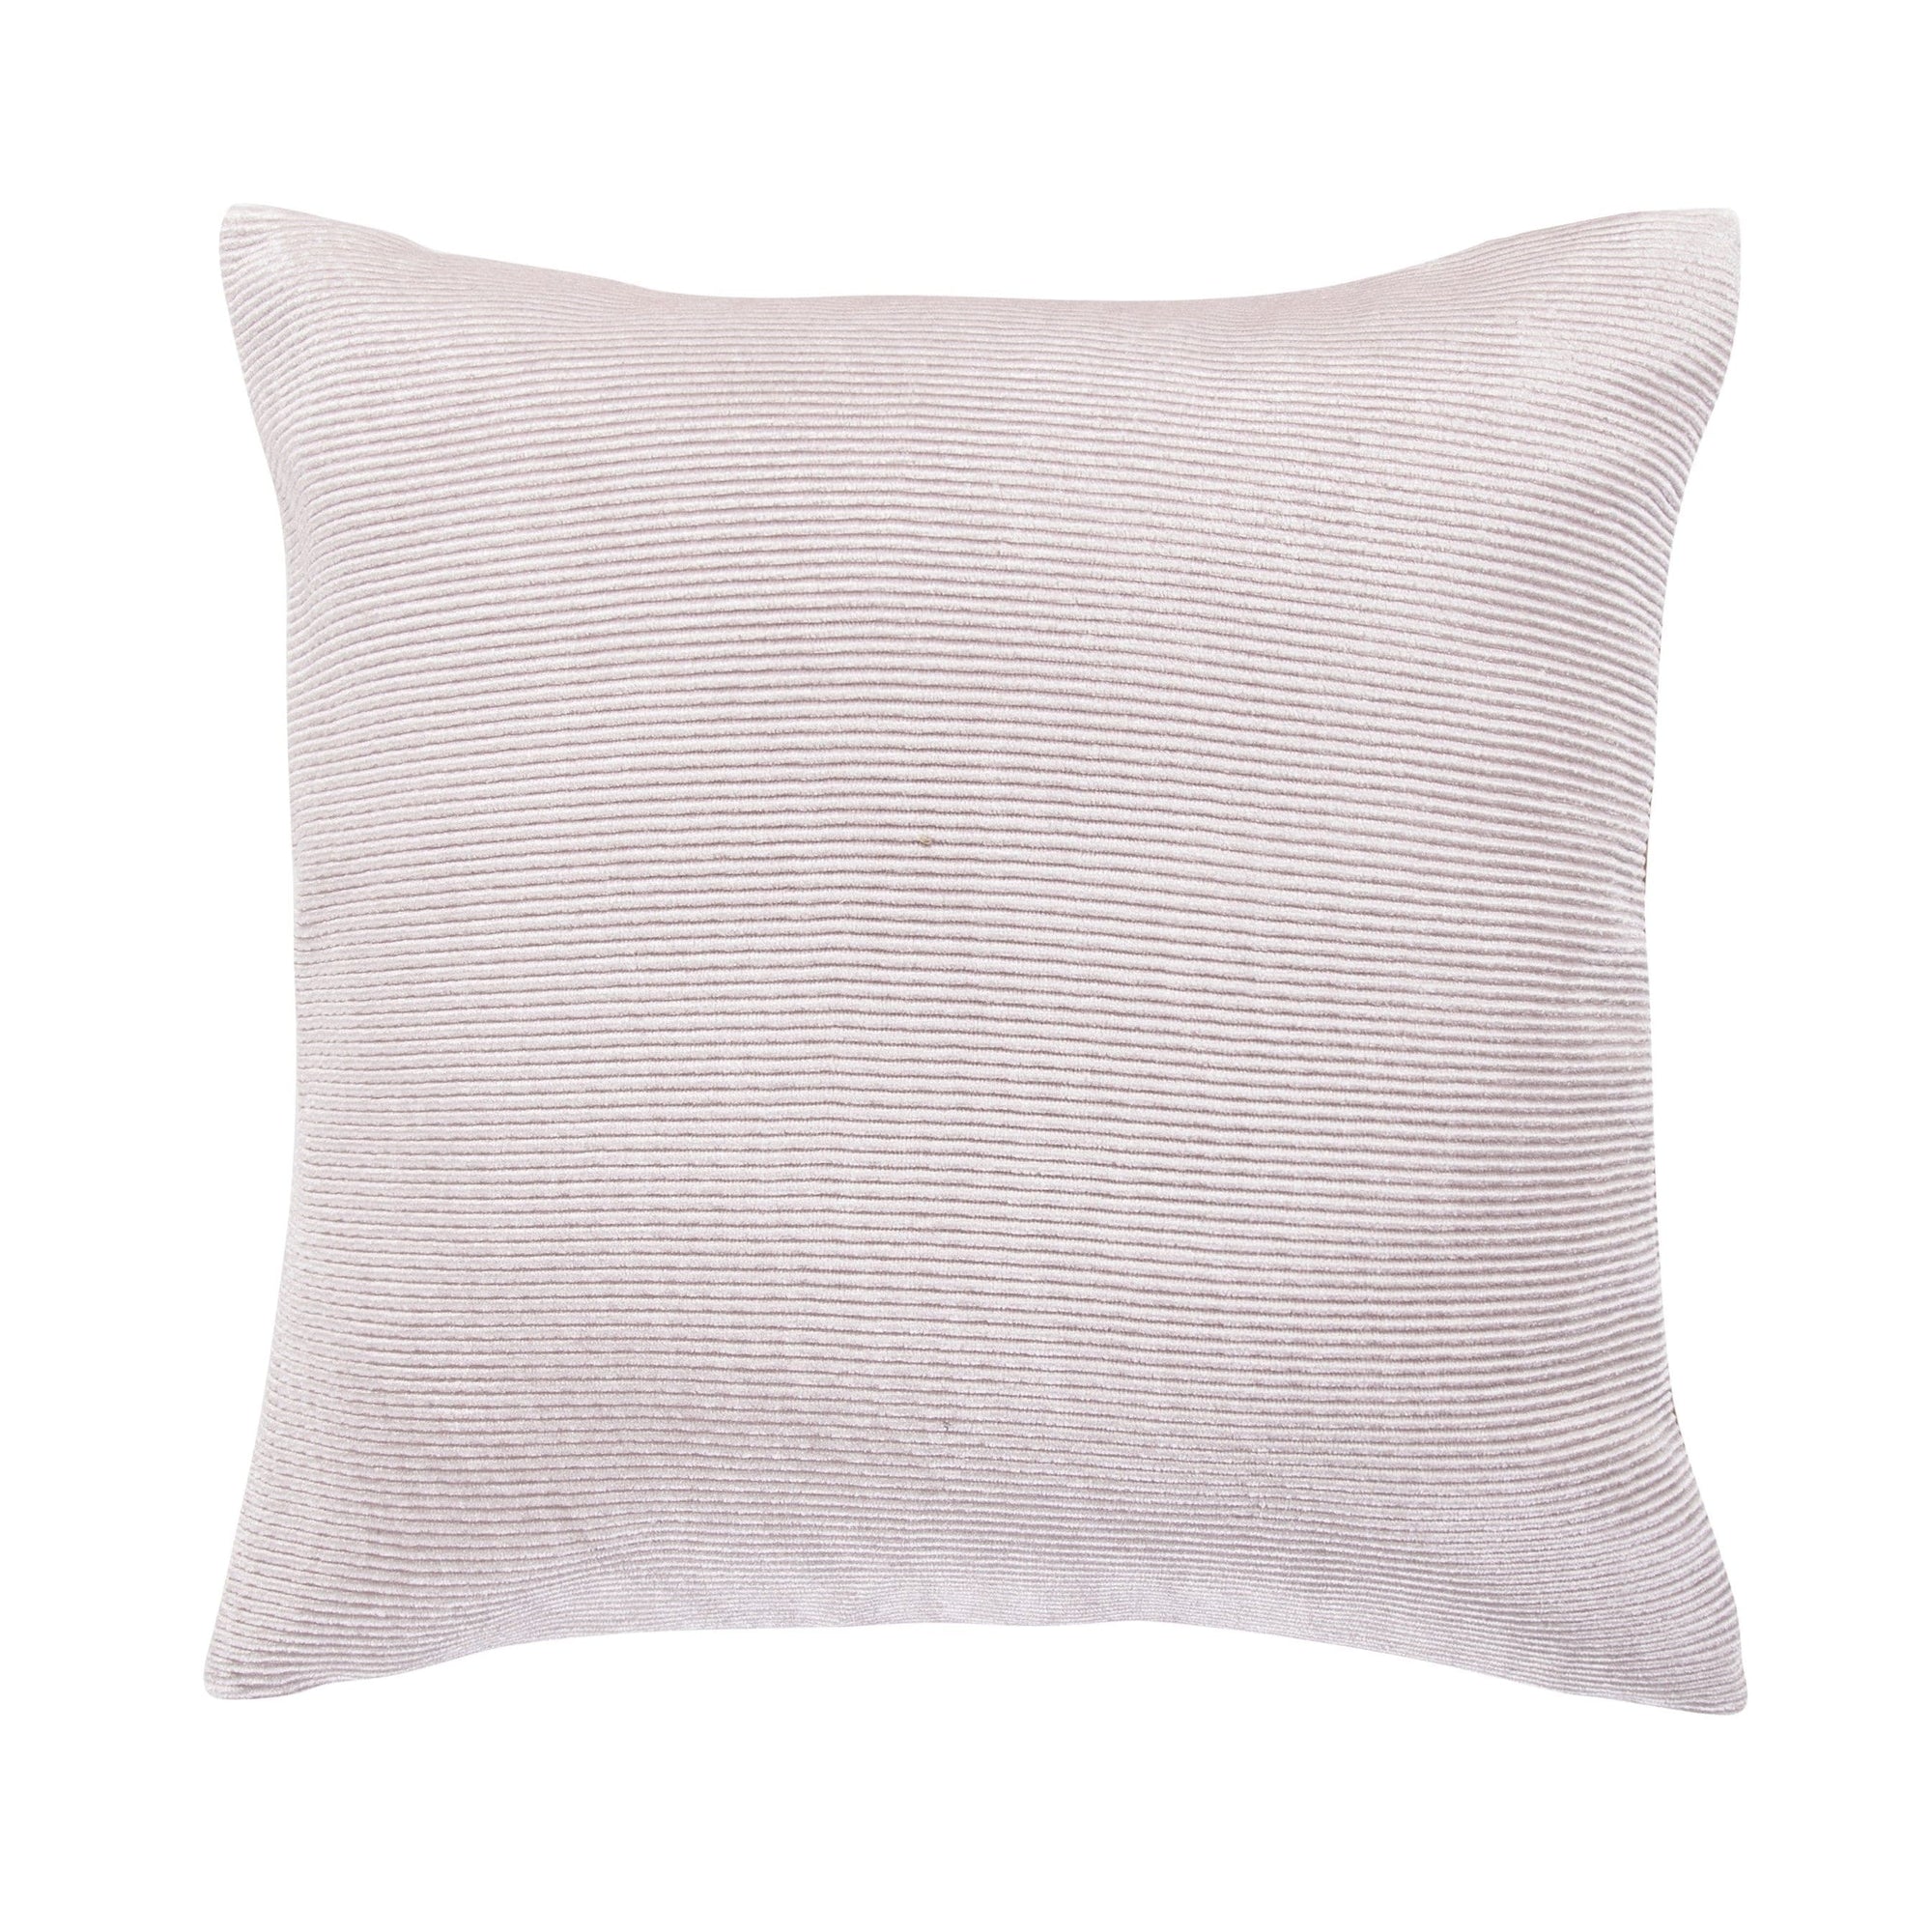 Pink Velvet Throw Pillow, 18x18 Pillow